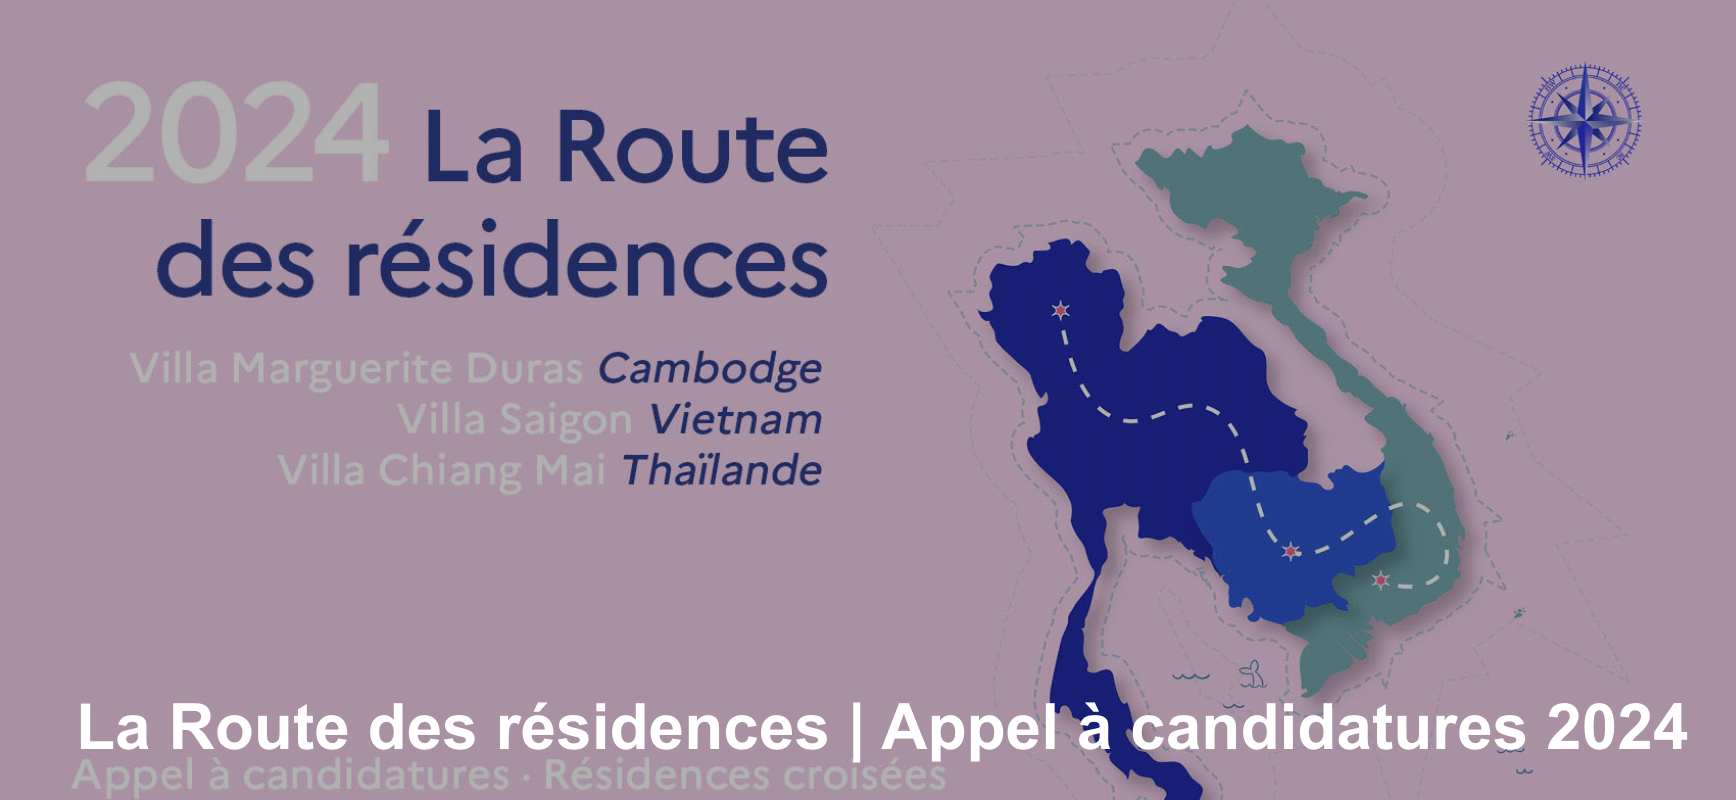 La Route des Résidences - call for applications